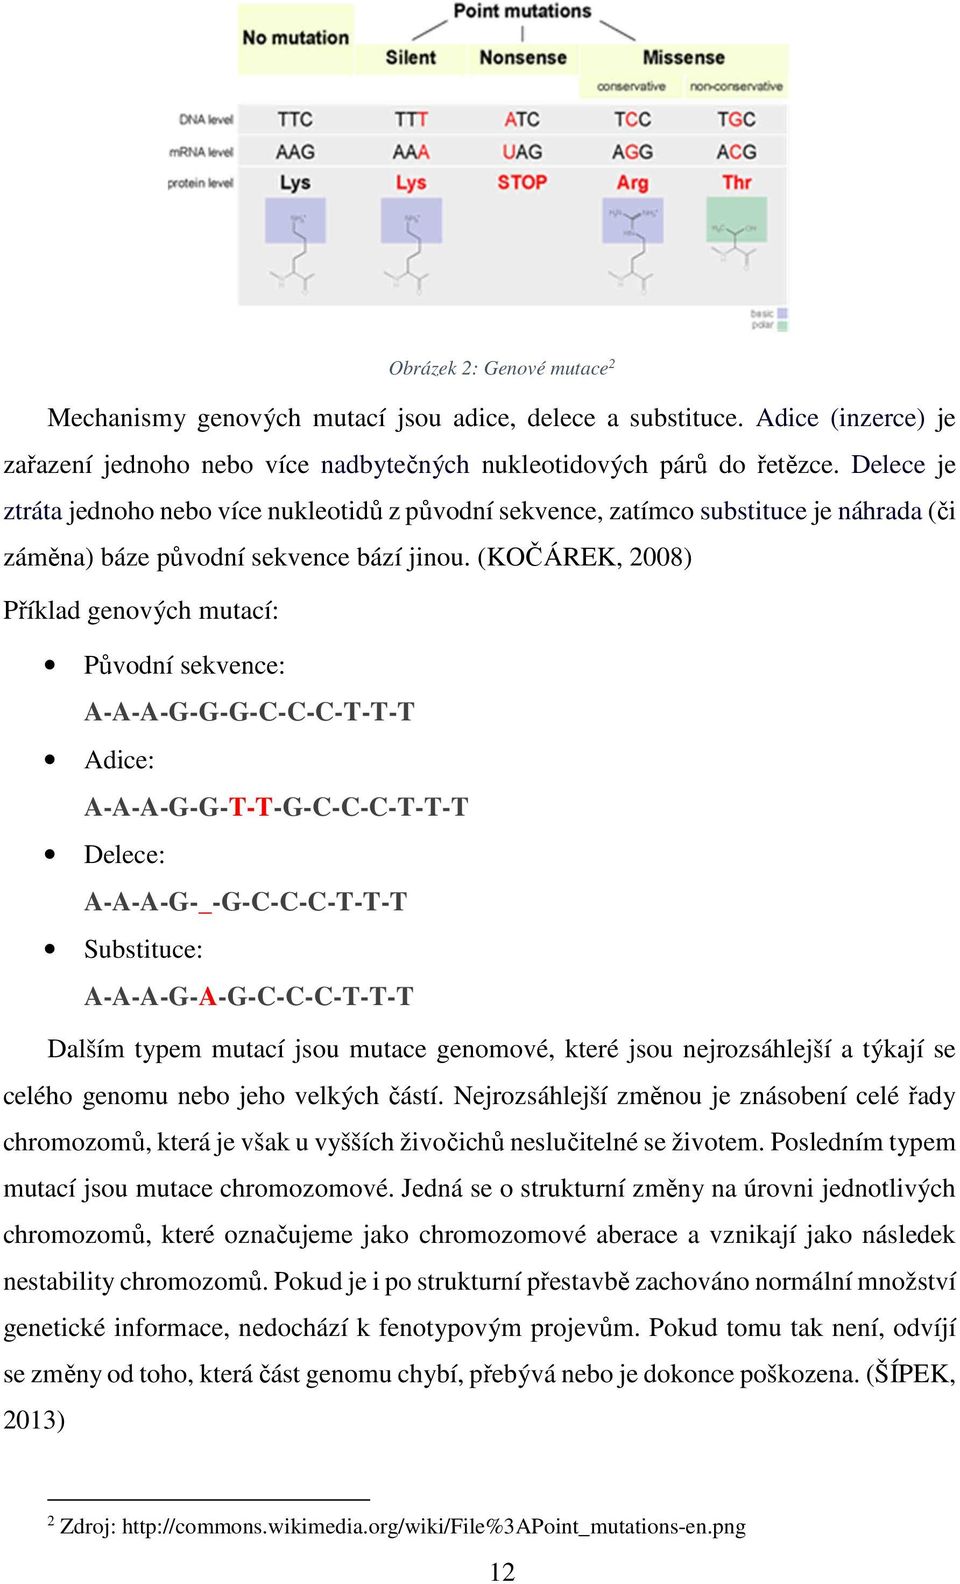 (KOČÁREK, 2008) Příklad genových mutací: Původní sekvence: A-A-A-G-G-G-C-C-C-T-T-T Adice: A-A-A-G-G-T-T-G-C-C-C-T-T-T Delece: A-A-A-G-_-G-C-C-C-T-T-T Substituce: A-A-A-G-A-G-C-C-C-T-T-T Dalším typem